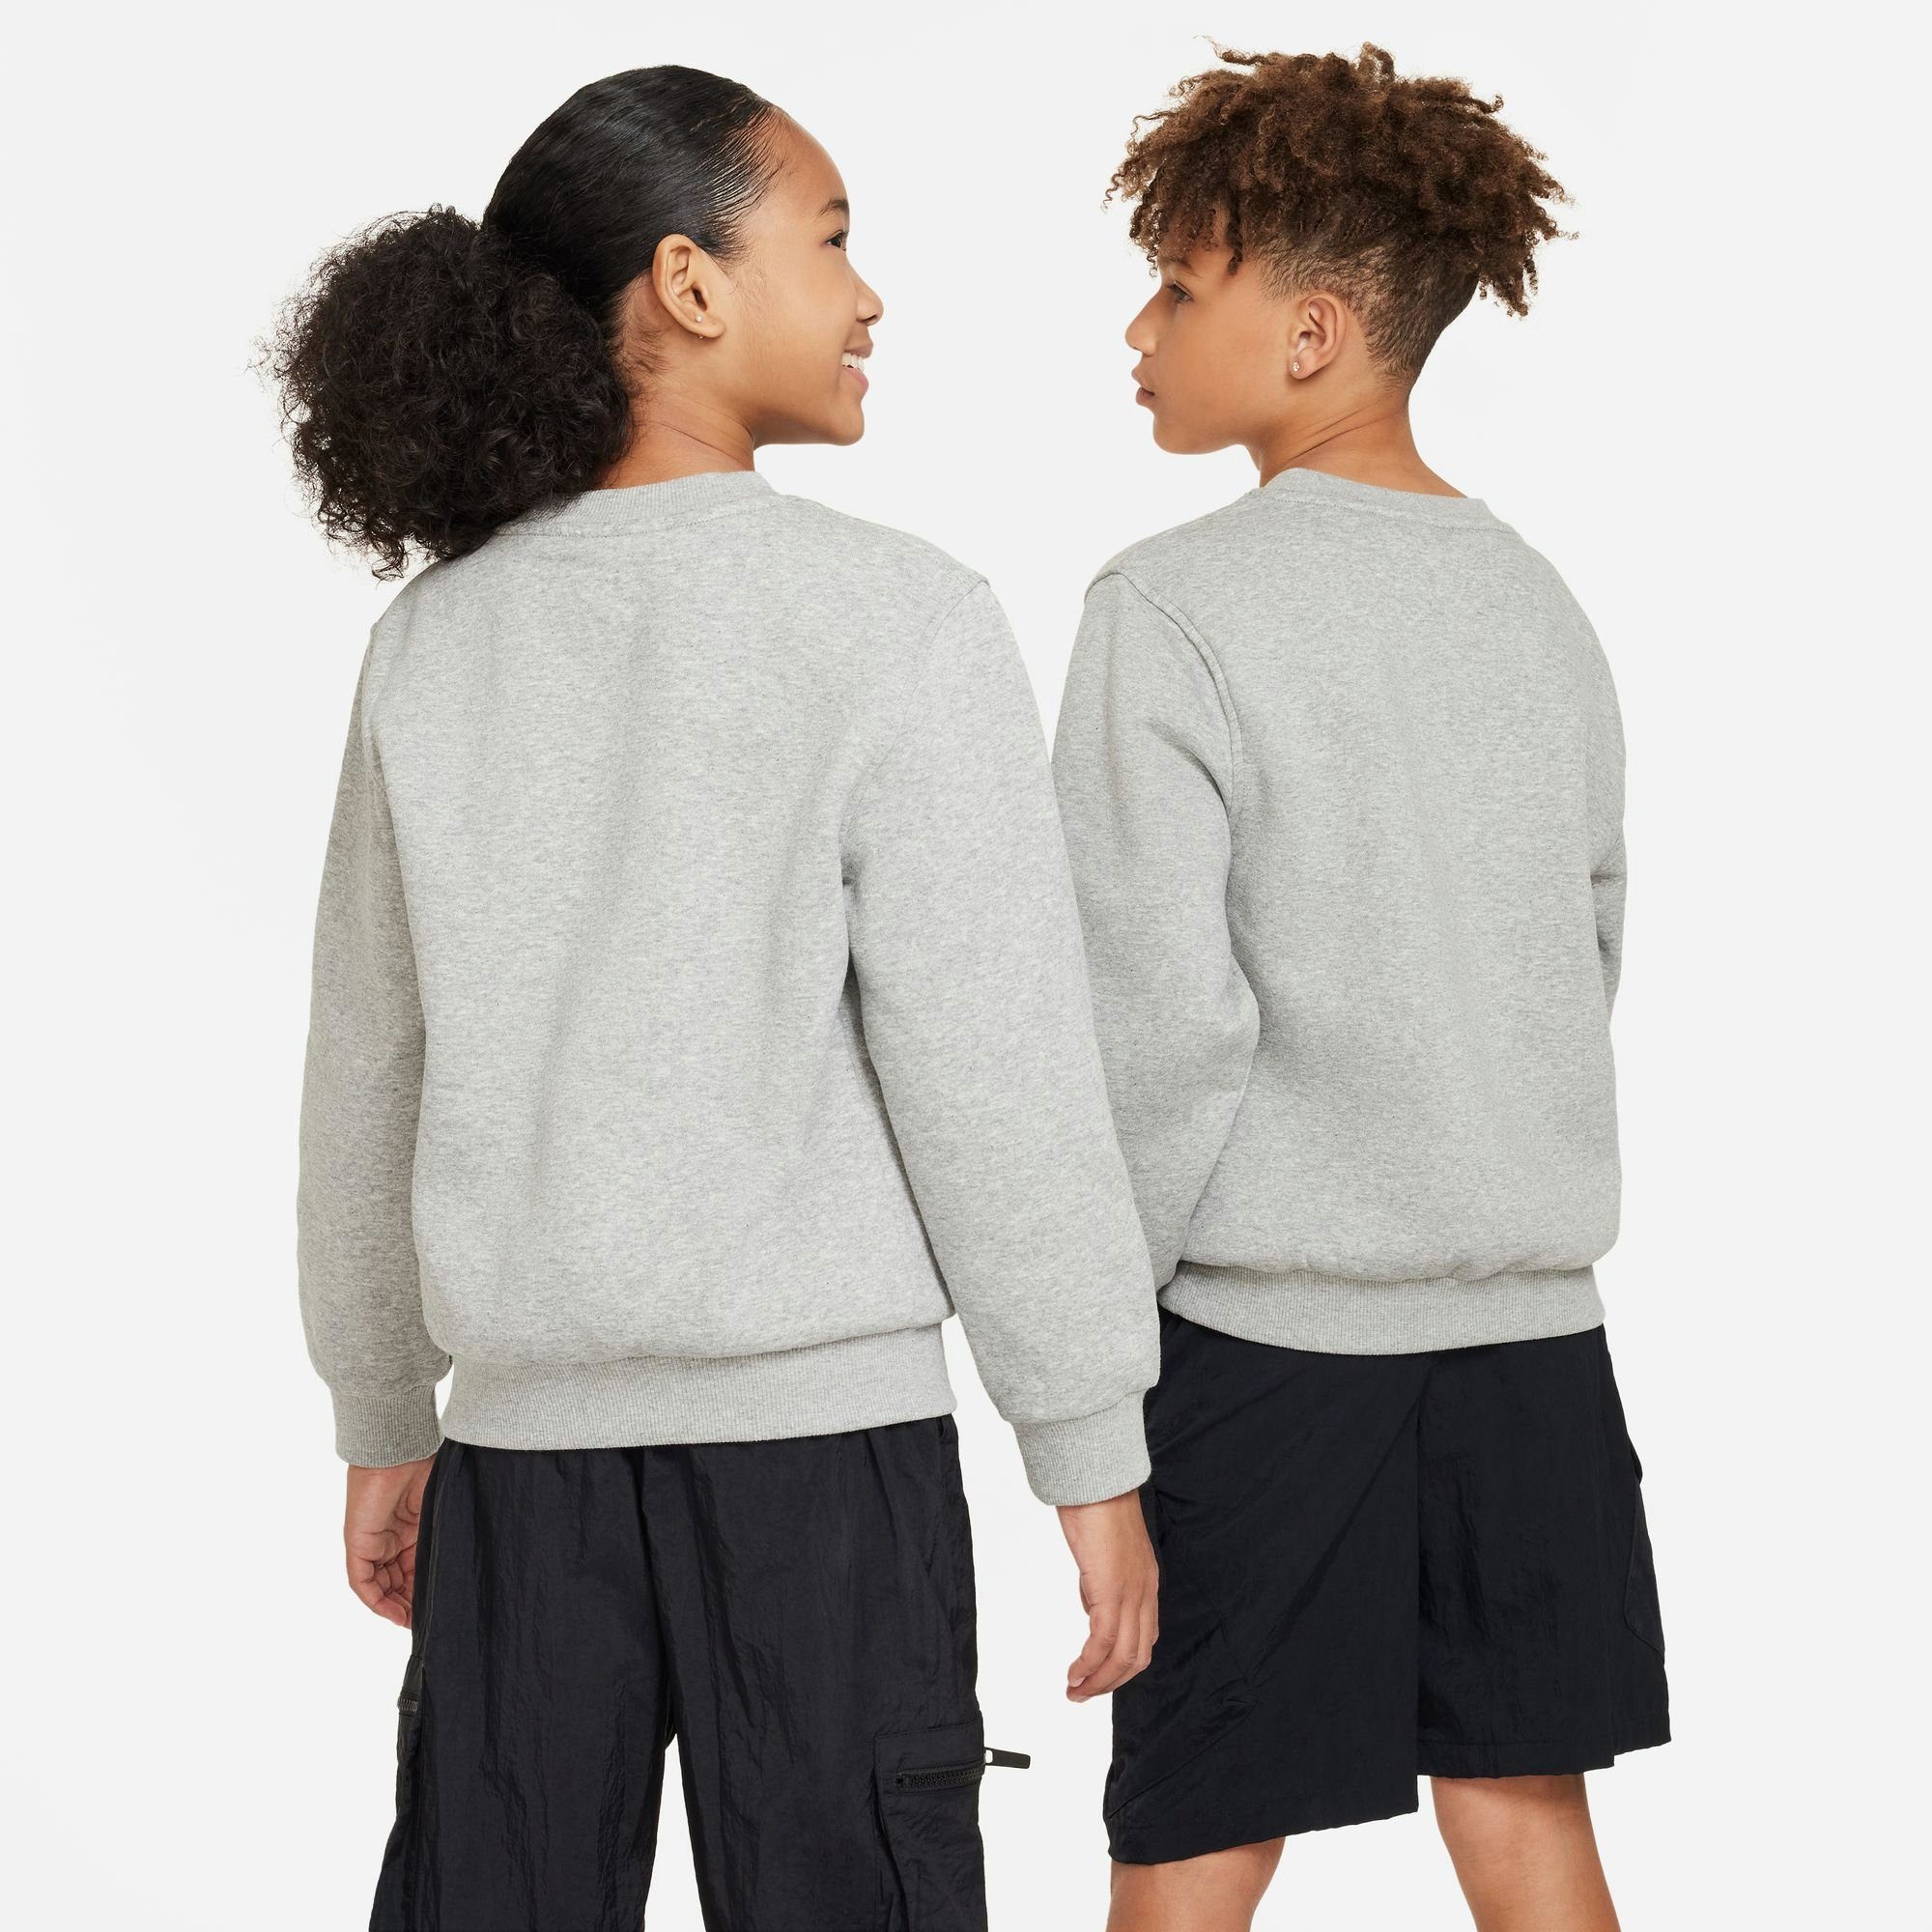 SWEATSHIRT Nike FLEECE HEATHER/WHITE Sweatshirt BIG DK GREY KIDS' CLUB Sportswear